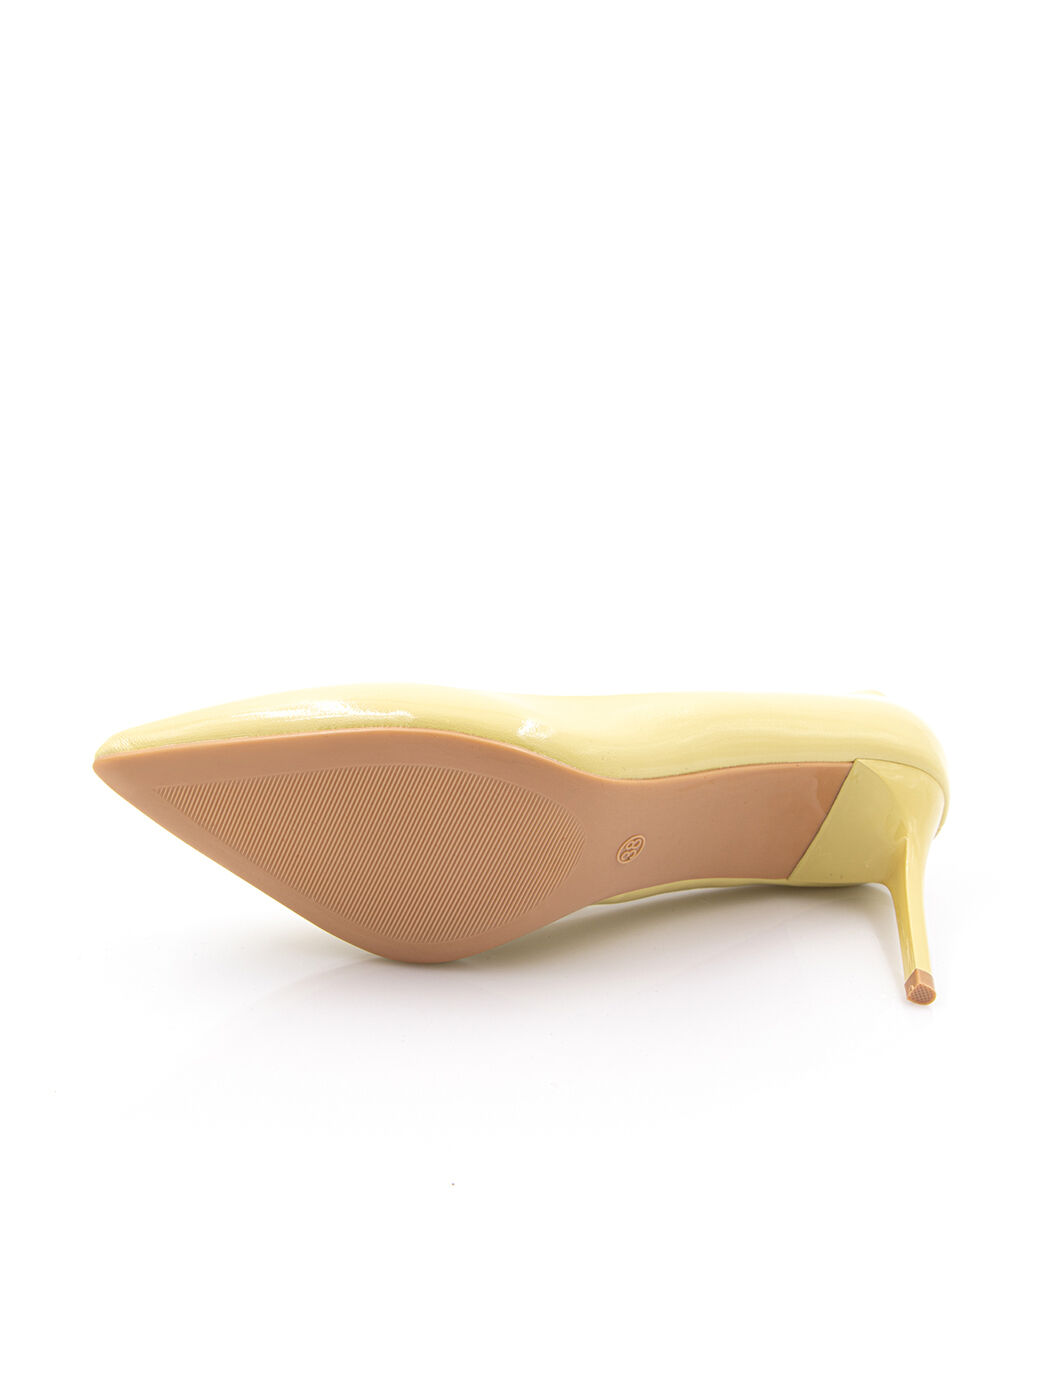 Туфли женские желтые искусственный лак каблук шпилька демисезон от производителя HM вид 2